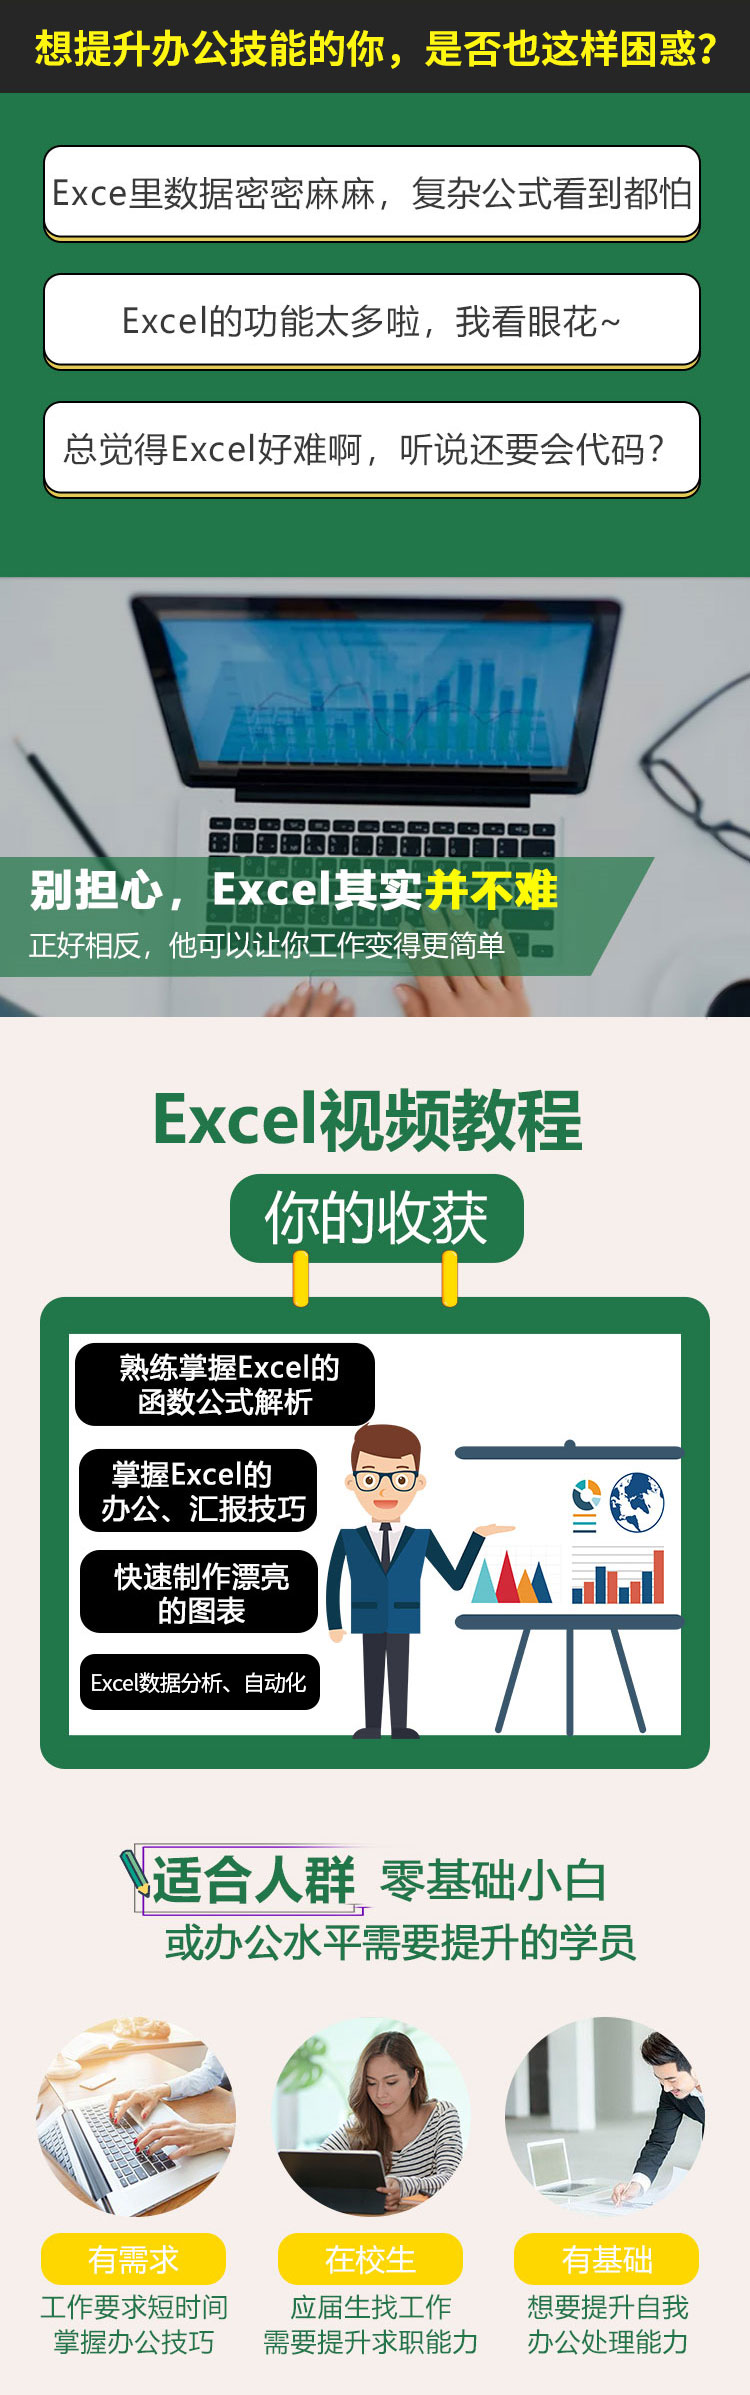 Excel 2019教程